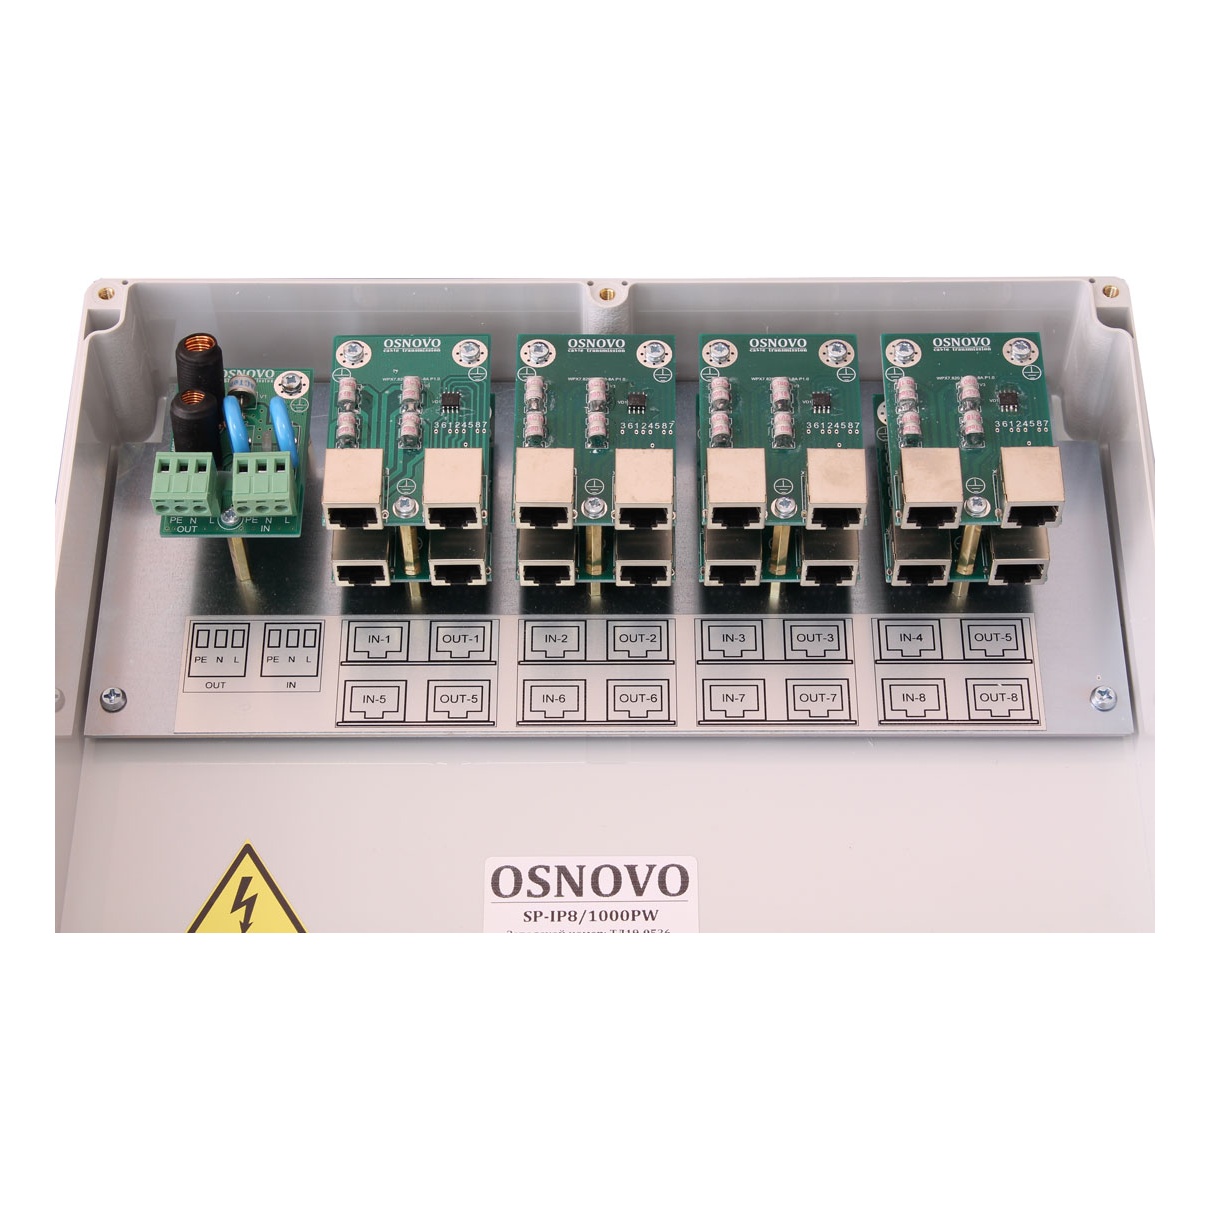 OSNOVO SP-IP8/1000PW Уличное устройство грозозащиты на 8 портов для локальной вычислительной сети (скорость до 1000 Мб/с) с защитой линий PoE (af/at, методы A + B, контакты 1/2, 3/6, 4/5, 7/8) и защитой линии питания 220V